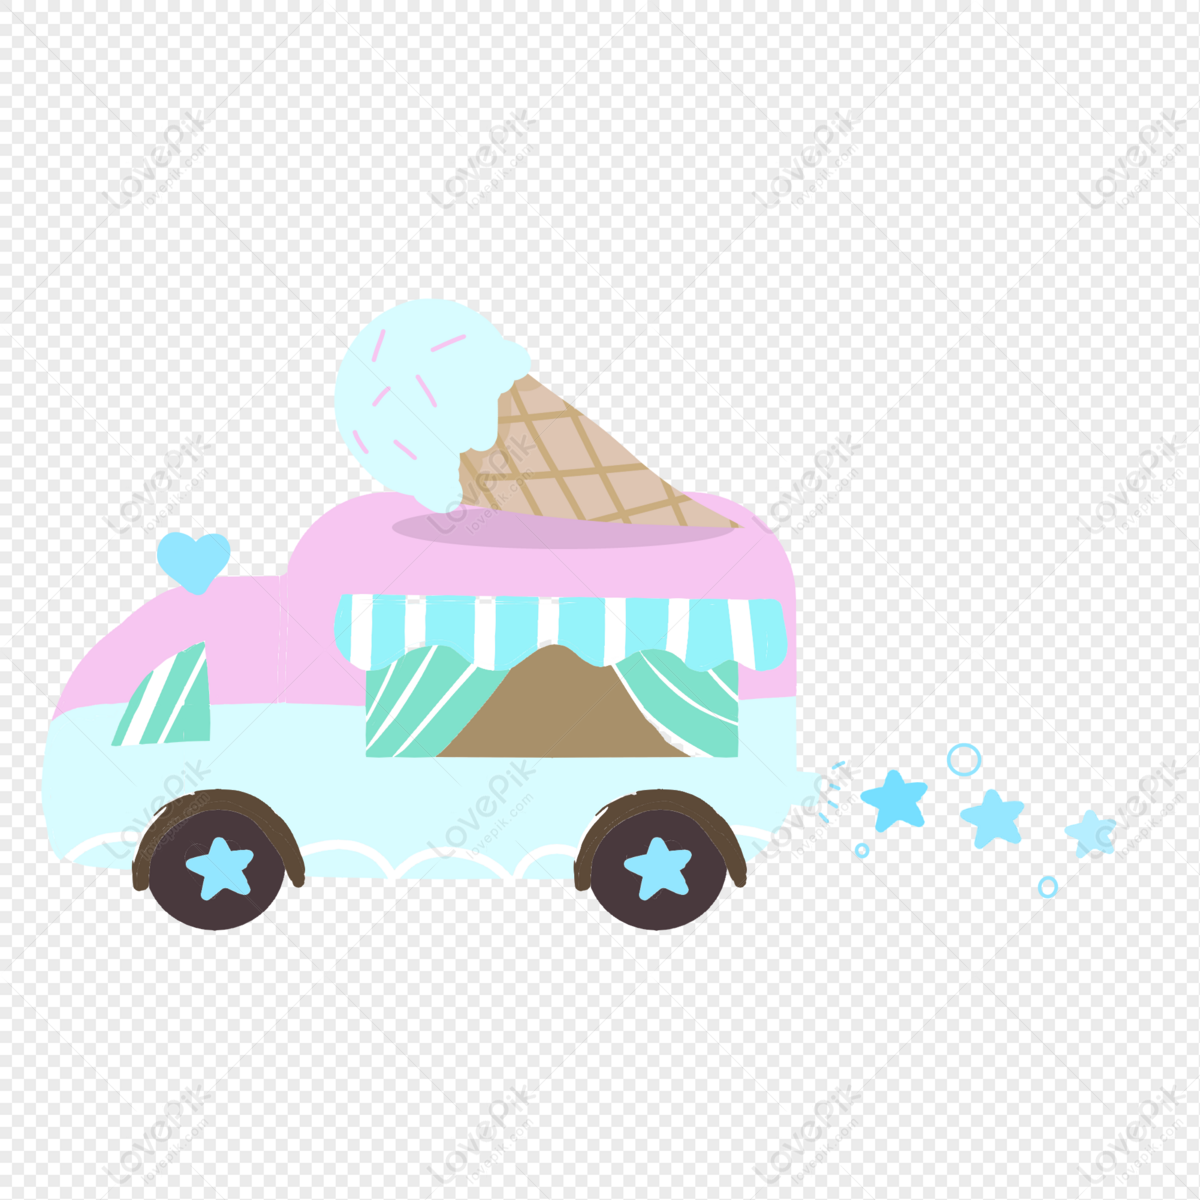 Kem xe ô tô đồ chơi sẽ khiến các bé yêu cực kỳ thích thú! Đó là món kem ngon và độc đáo được tạo hình theo những chiếc xe ô tô nổi tiếng. Khám phá hình ảnh về món ăn đặc biệt này để không khí vui tươi tràn đầy trong nhà bạn.